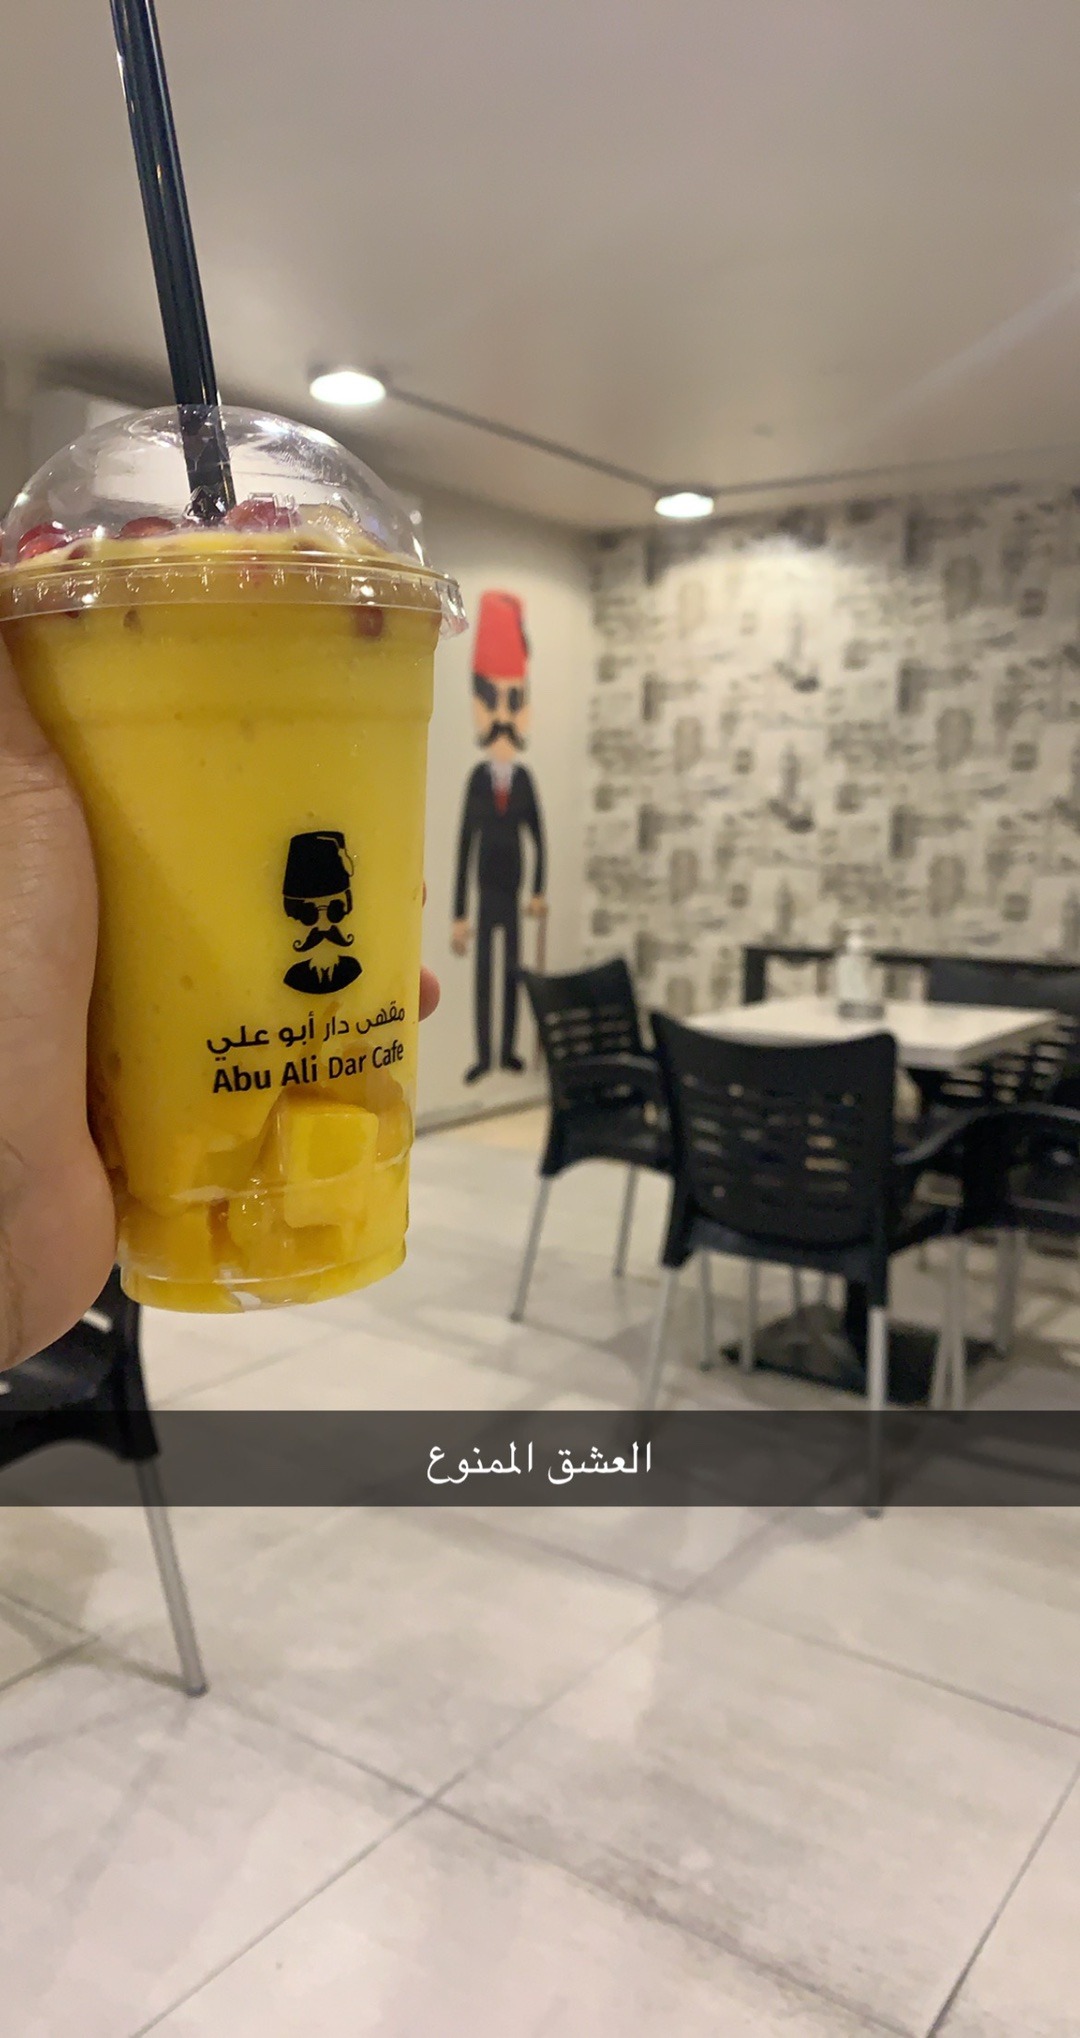 abu ali cafe - Bahrain